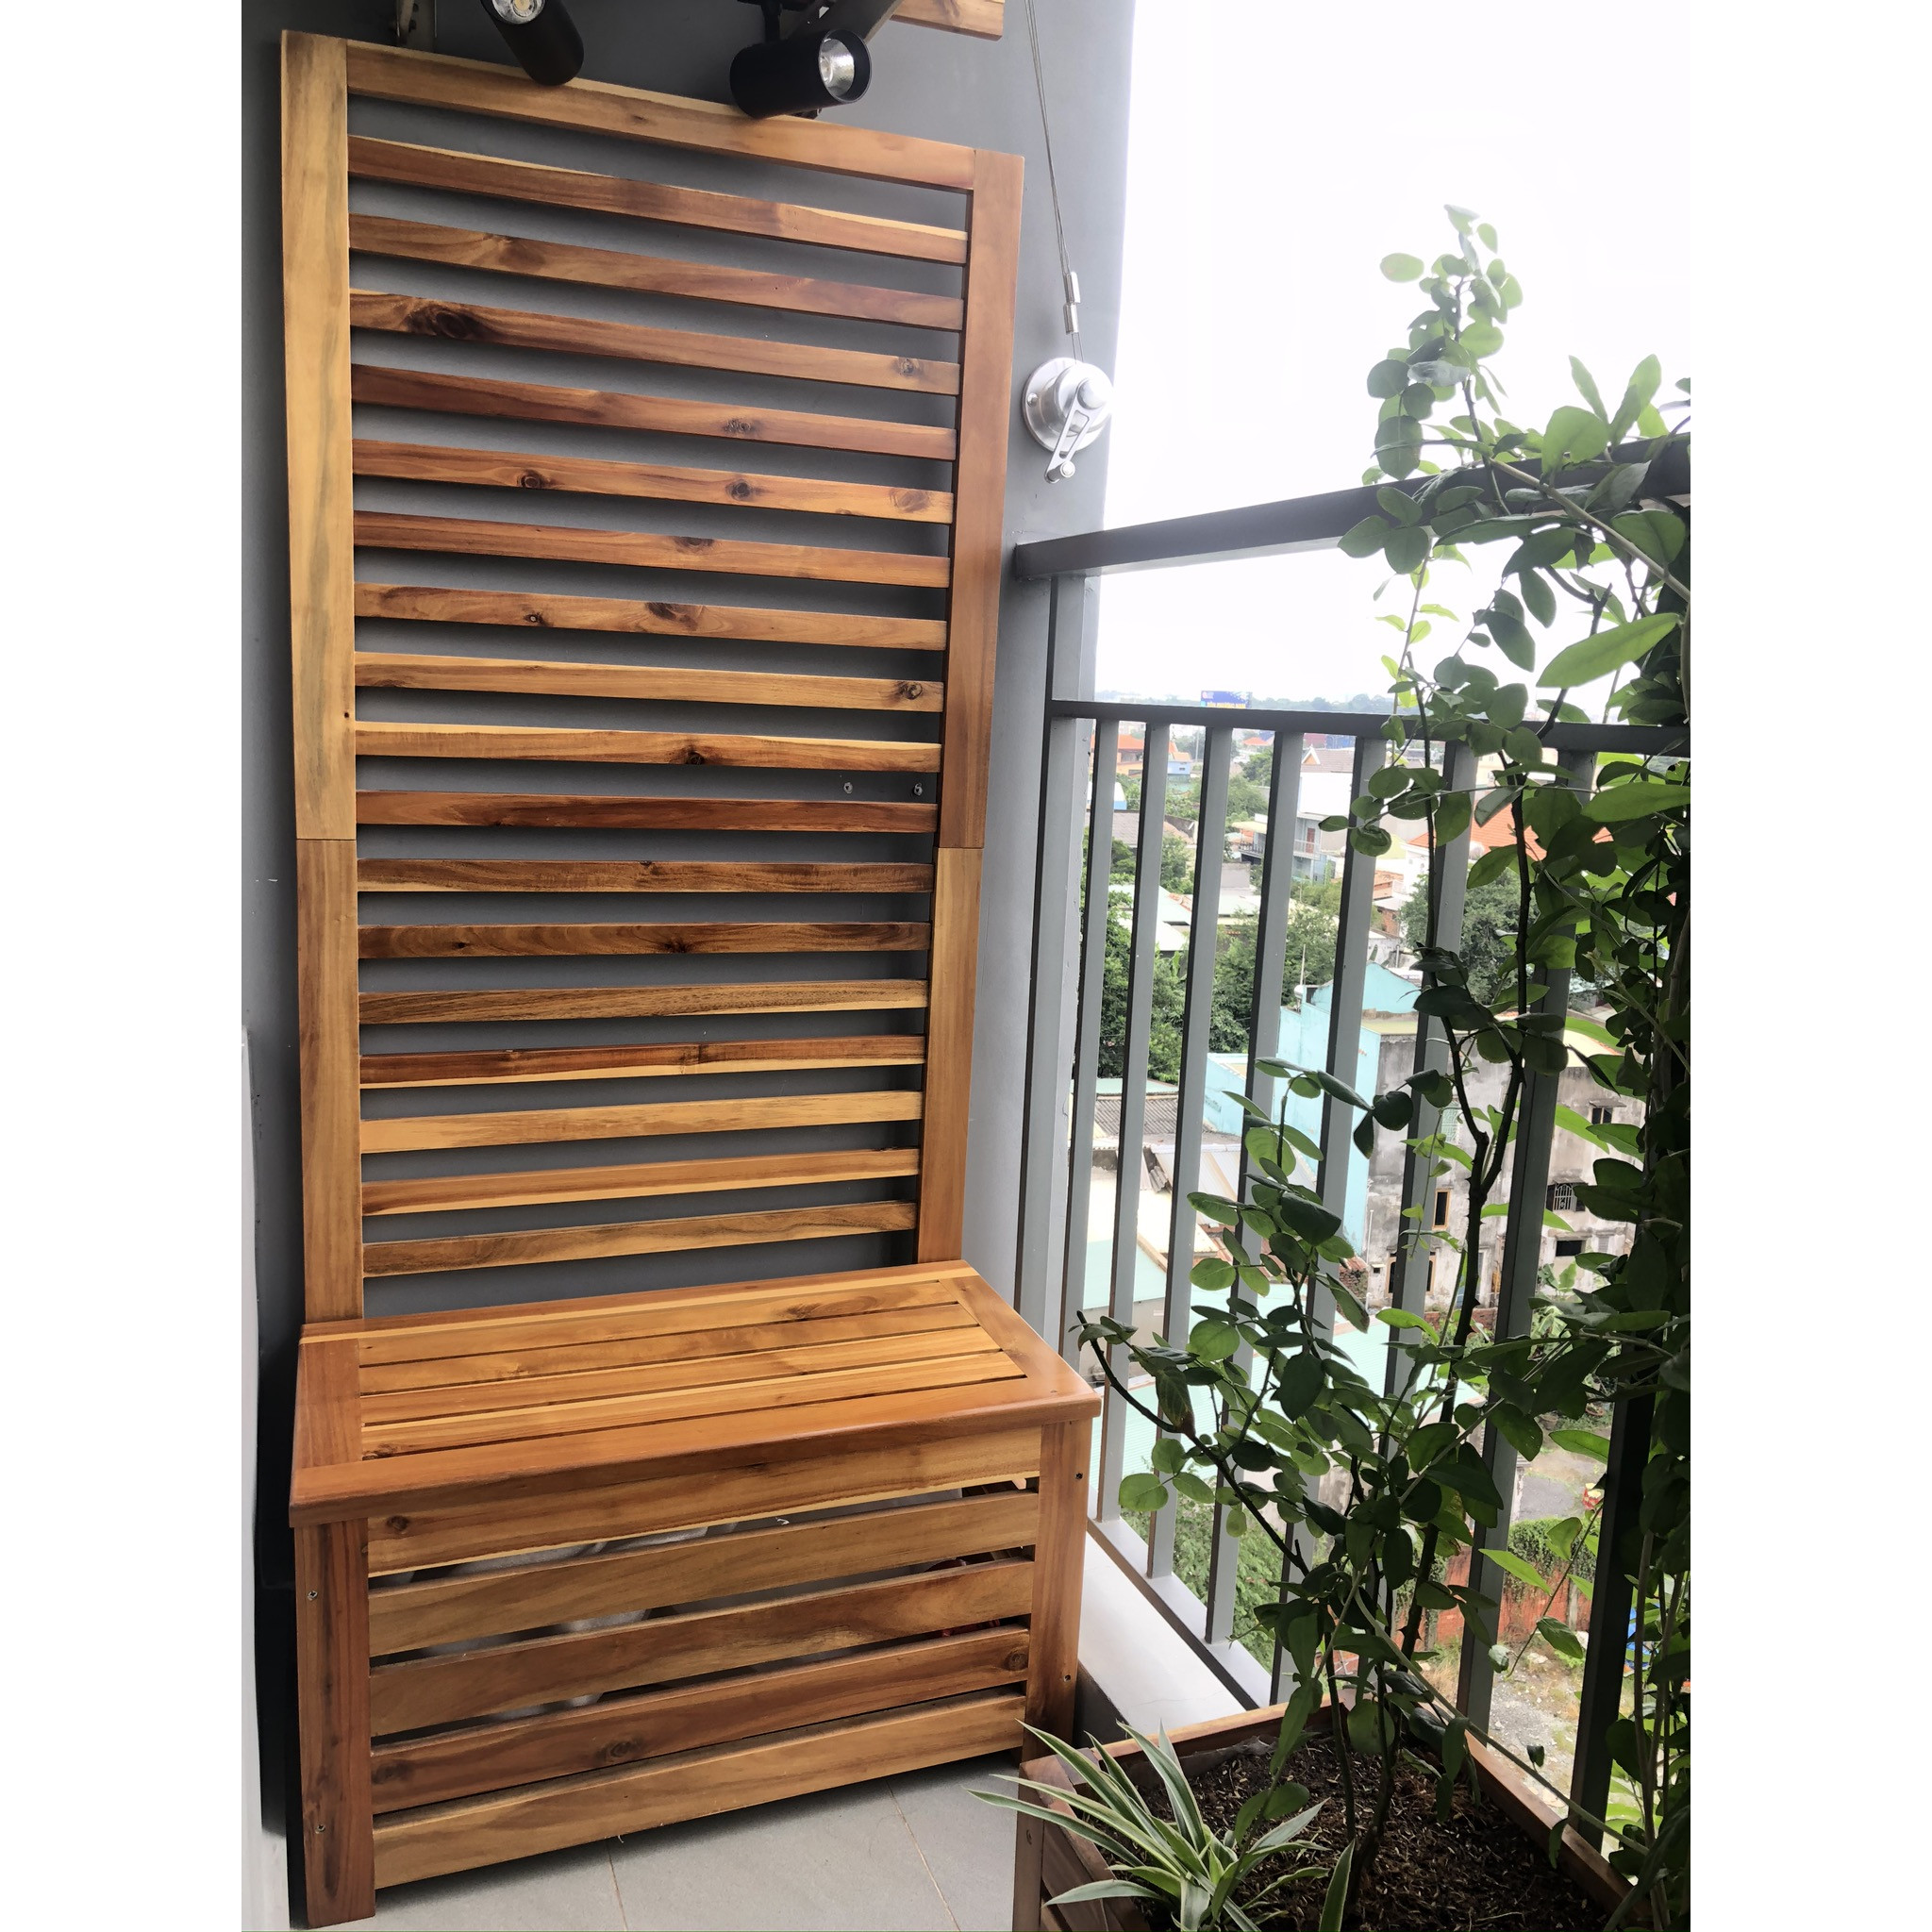 Băng ghế ngồi kết hợp ngăn cất đồ và vách gỗ trang trí ban công